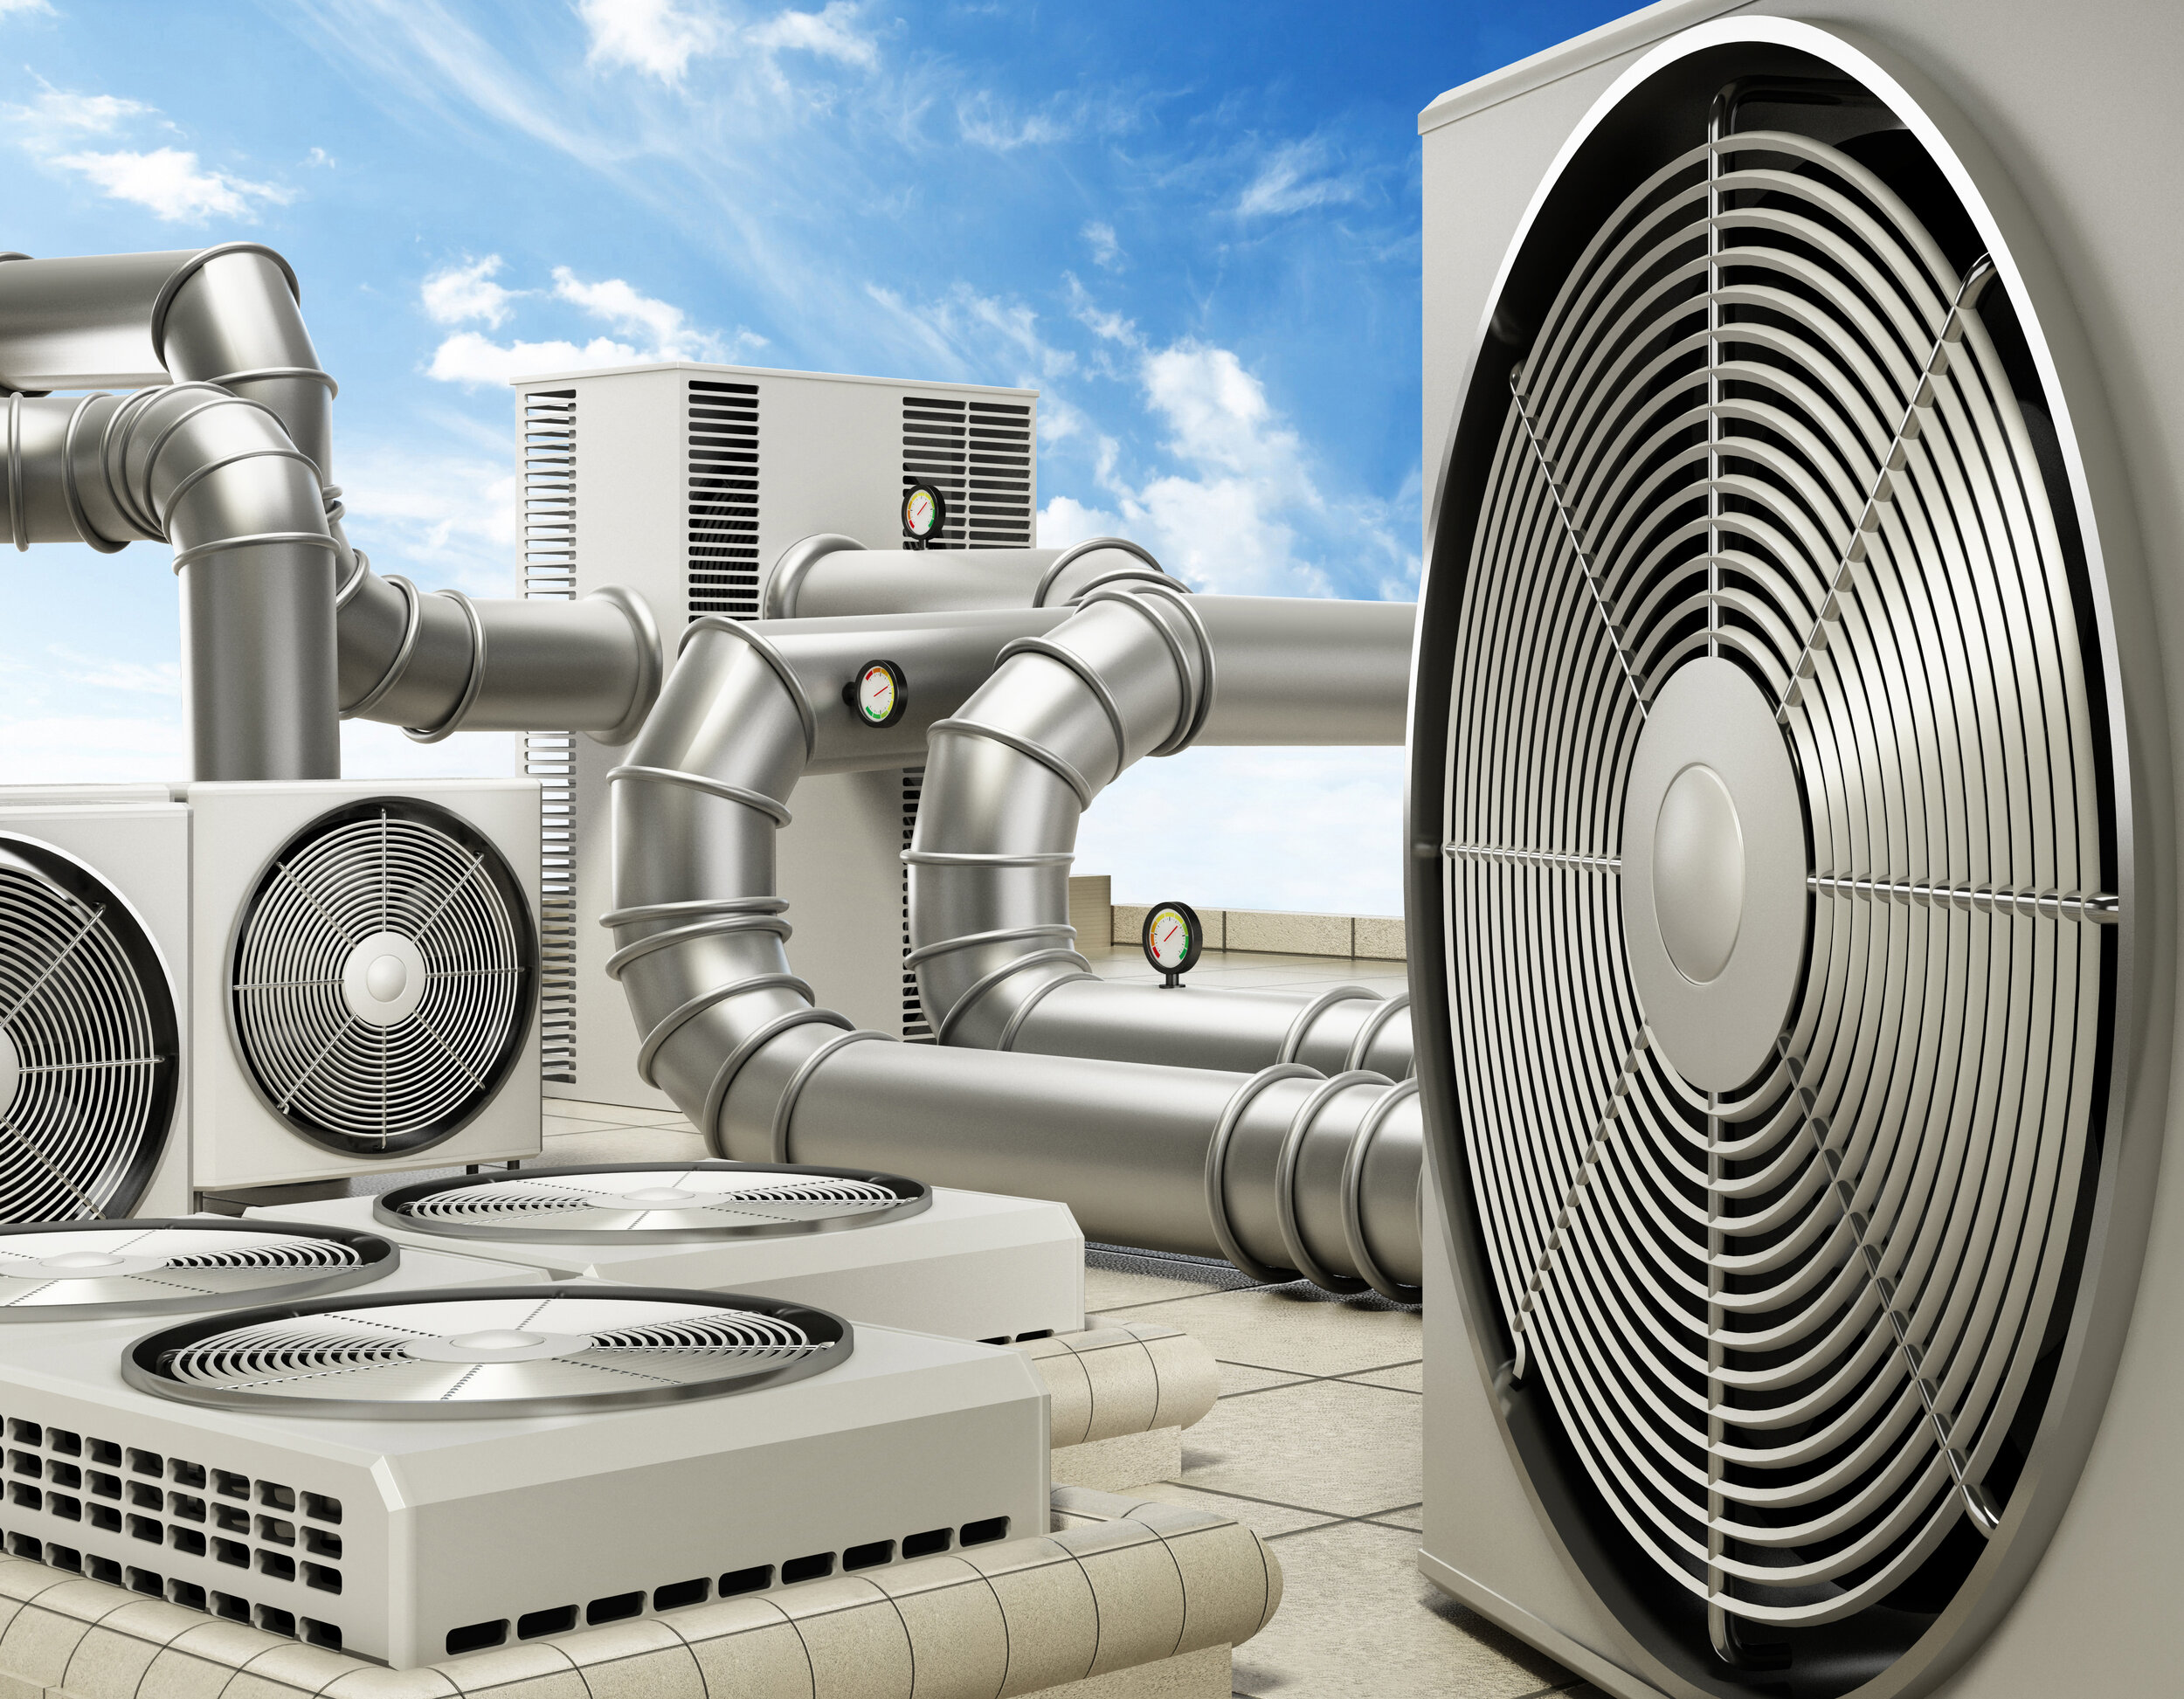 Вентиляционные кондиционеры. Система вентиляции Air Ventilation. HVAC система вентиляции и кондиционирования. Система VRF кондиционирования воздуха. Отопление и кондиционирование.